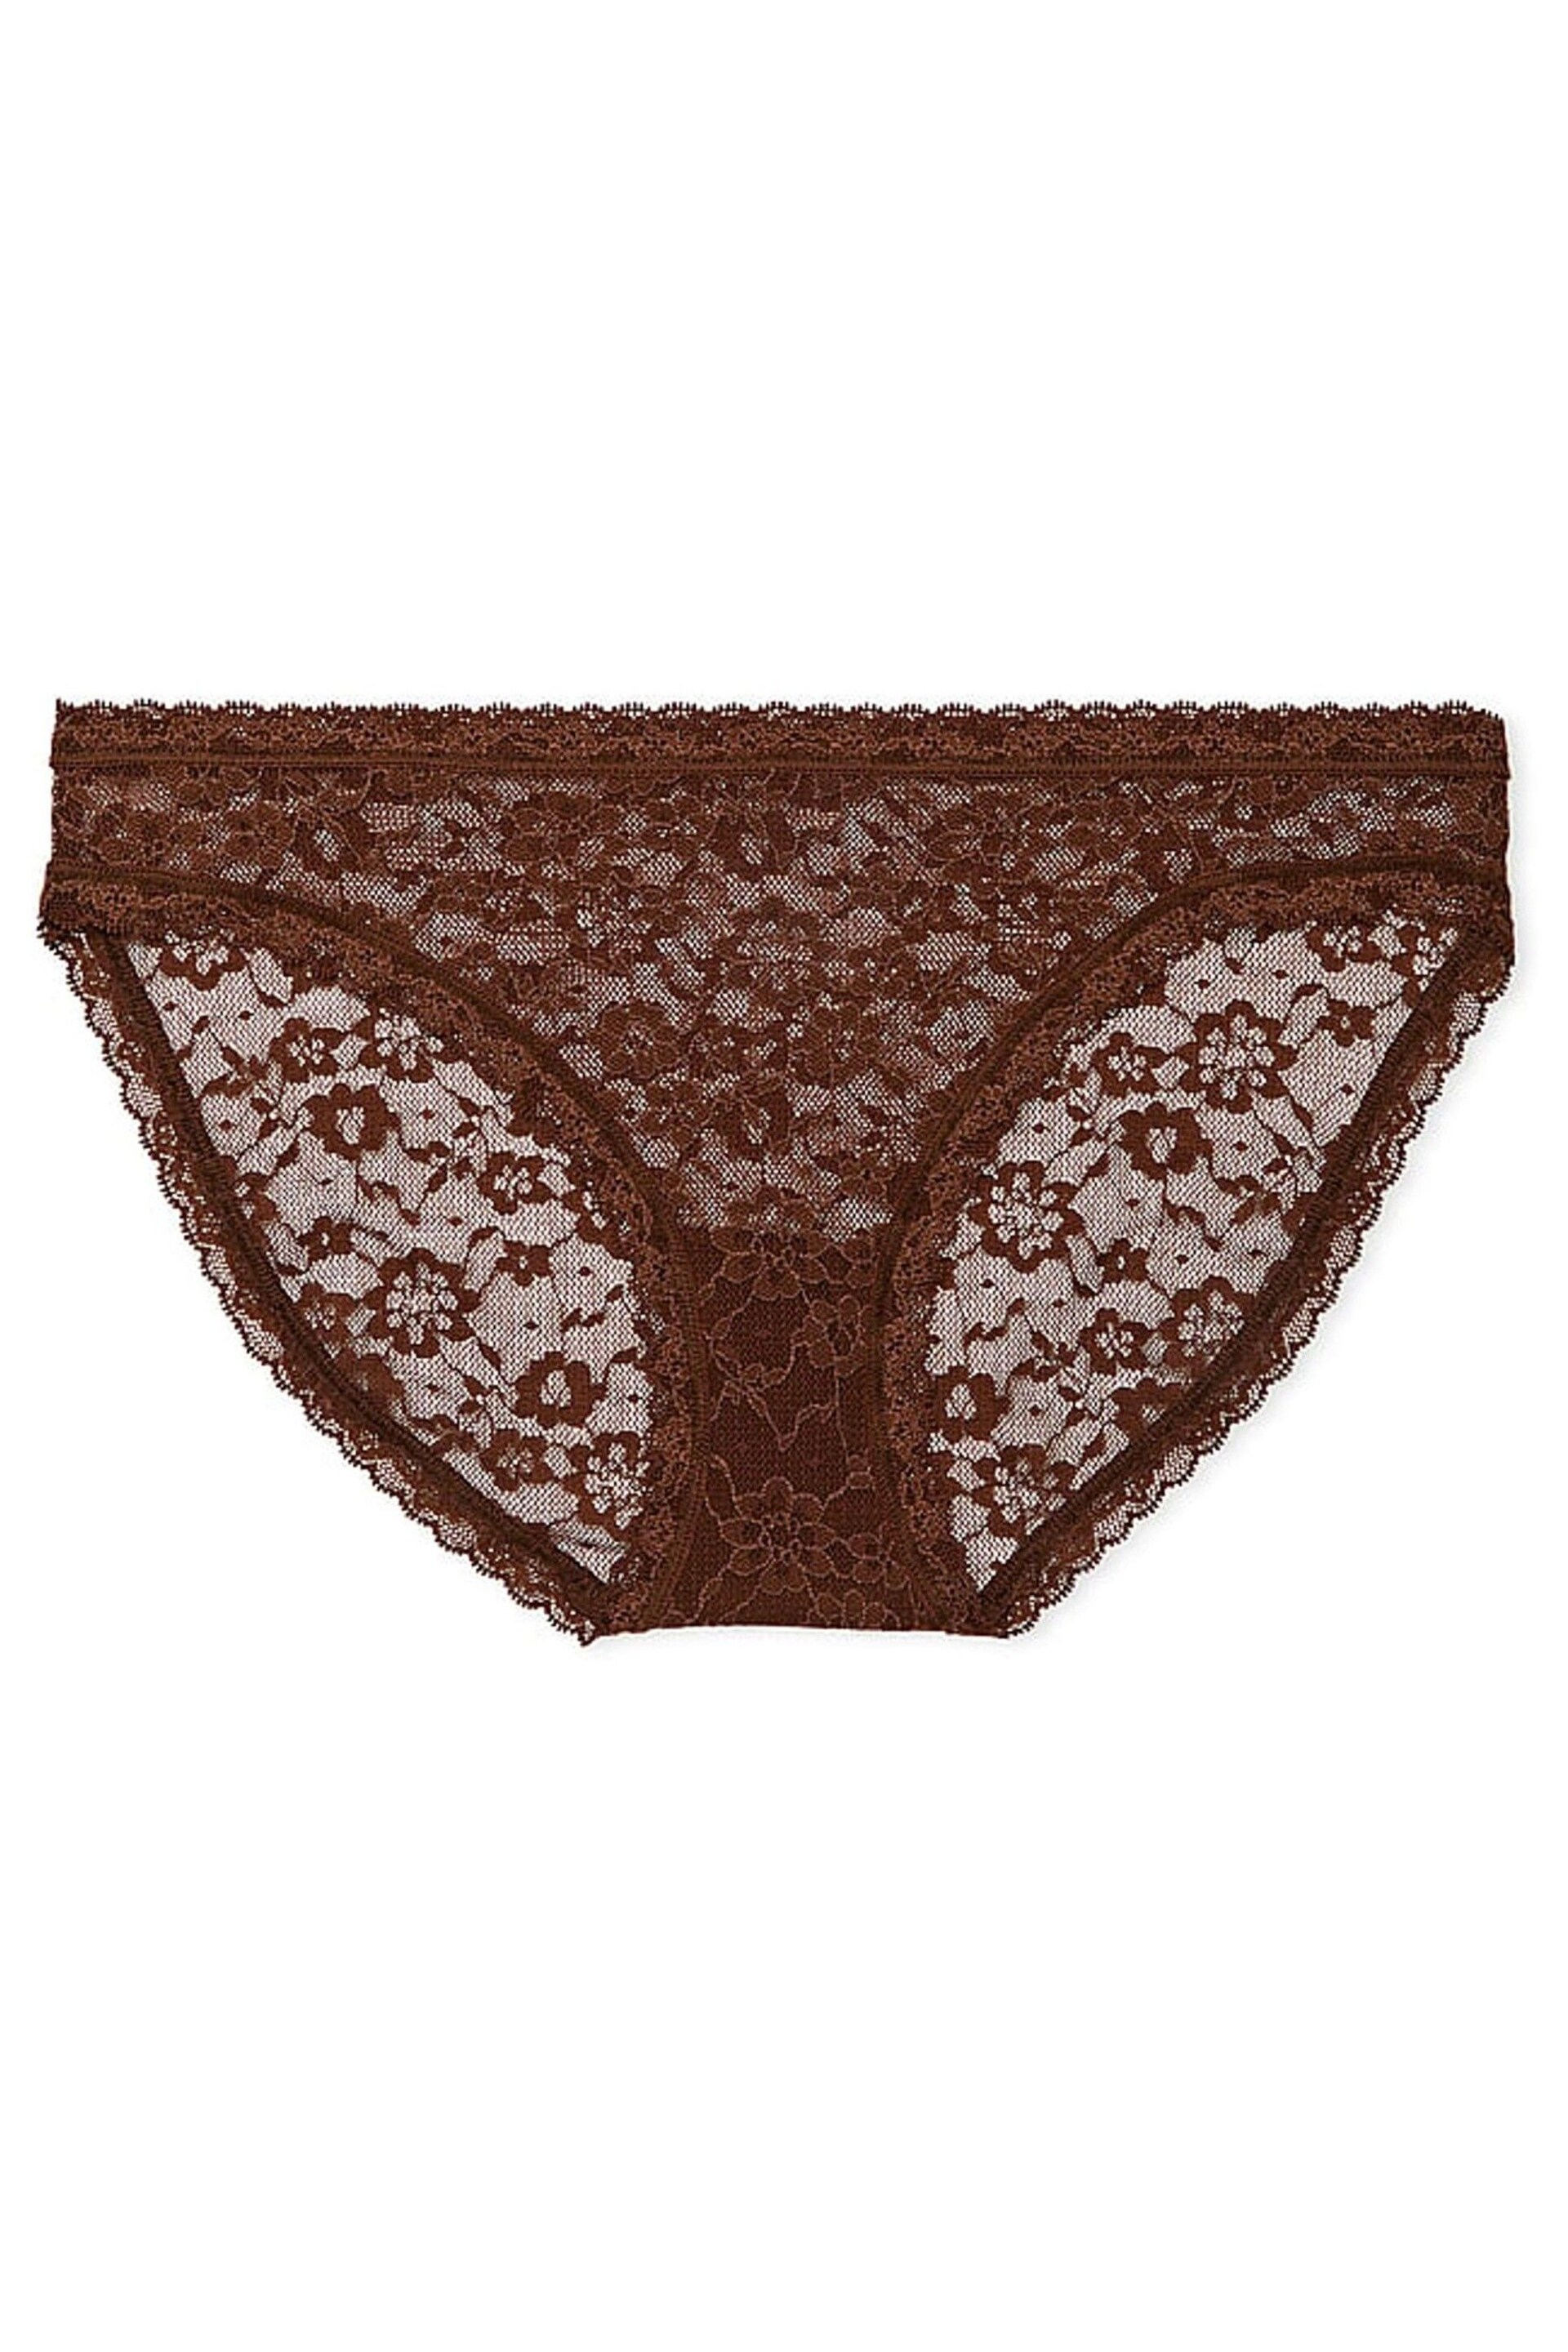 Victoria's Secret Ganache Brown Bikini Lace Knickers - Image 3 of 3